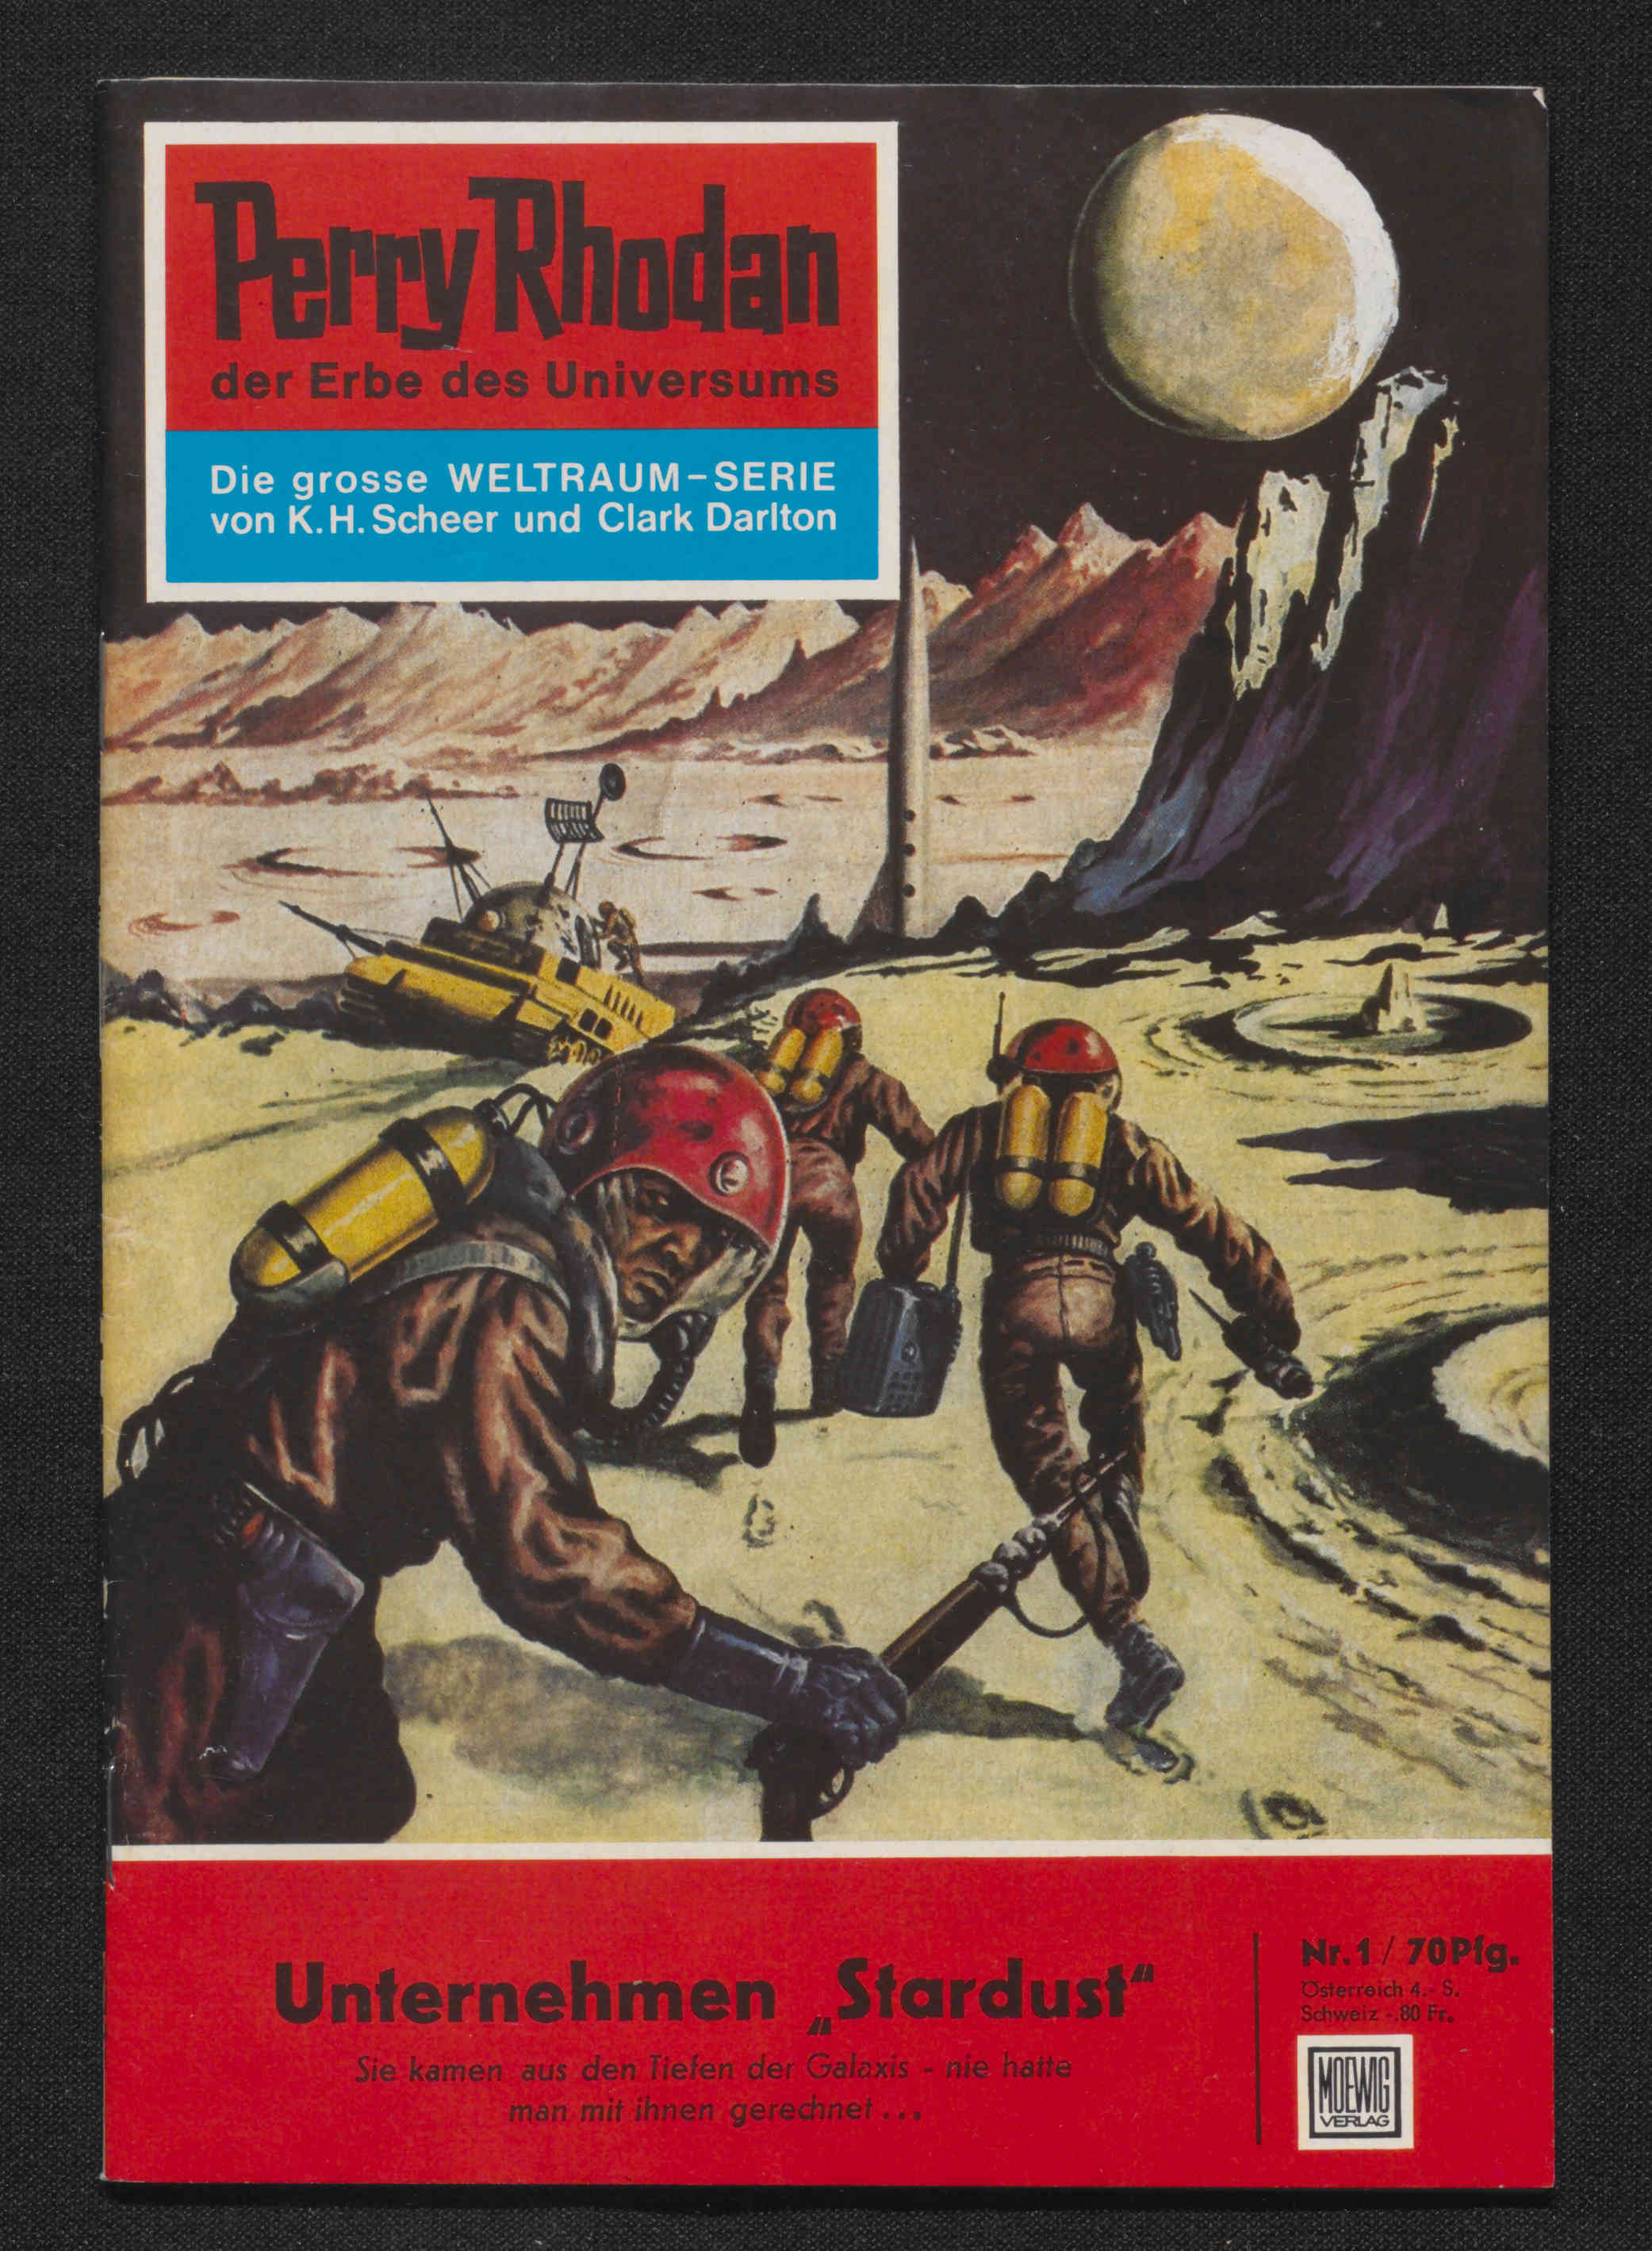 Die Abbildung zeigt das Cover des ersten Perry Rhodan-Heftes von 1961.